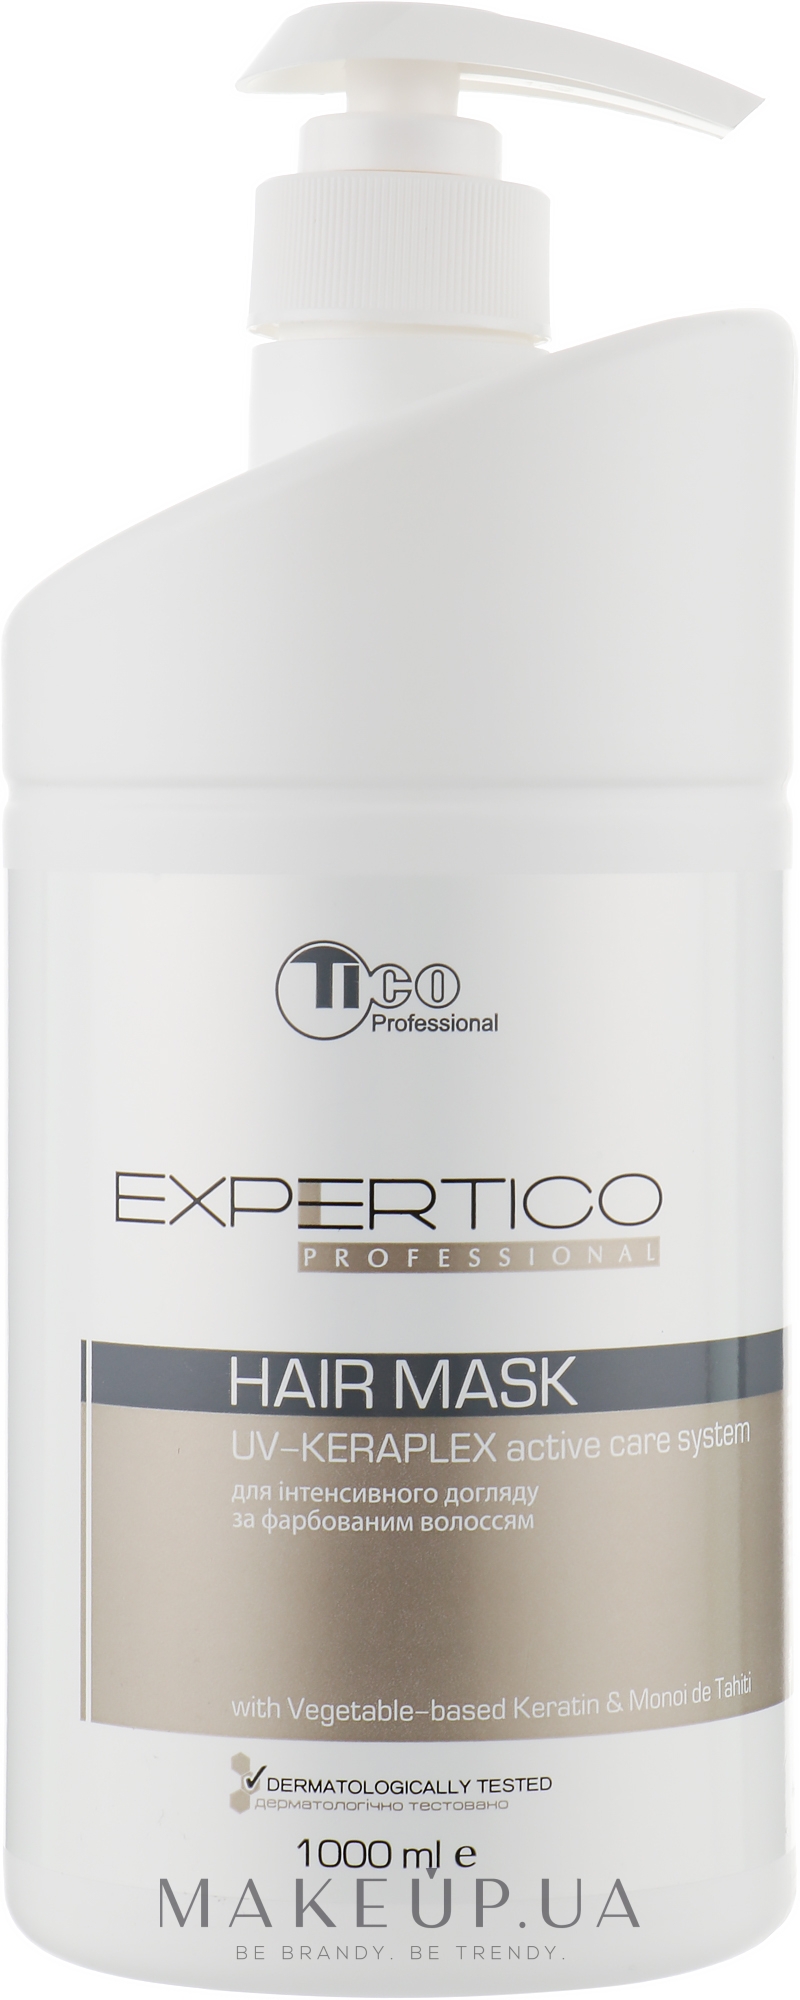 Відновлювальна маска для фарбованого волосся - Tico Professional Expertico Uv-keraplex — фото 1000ml